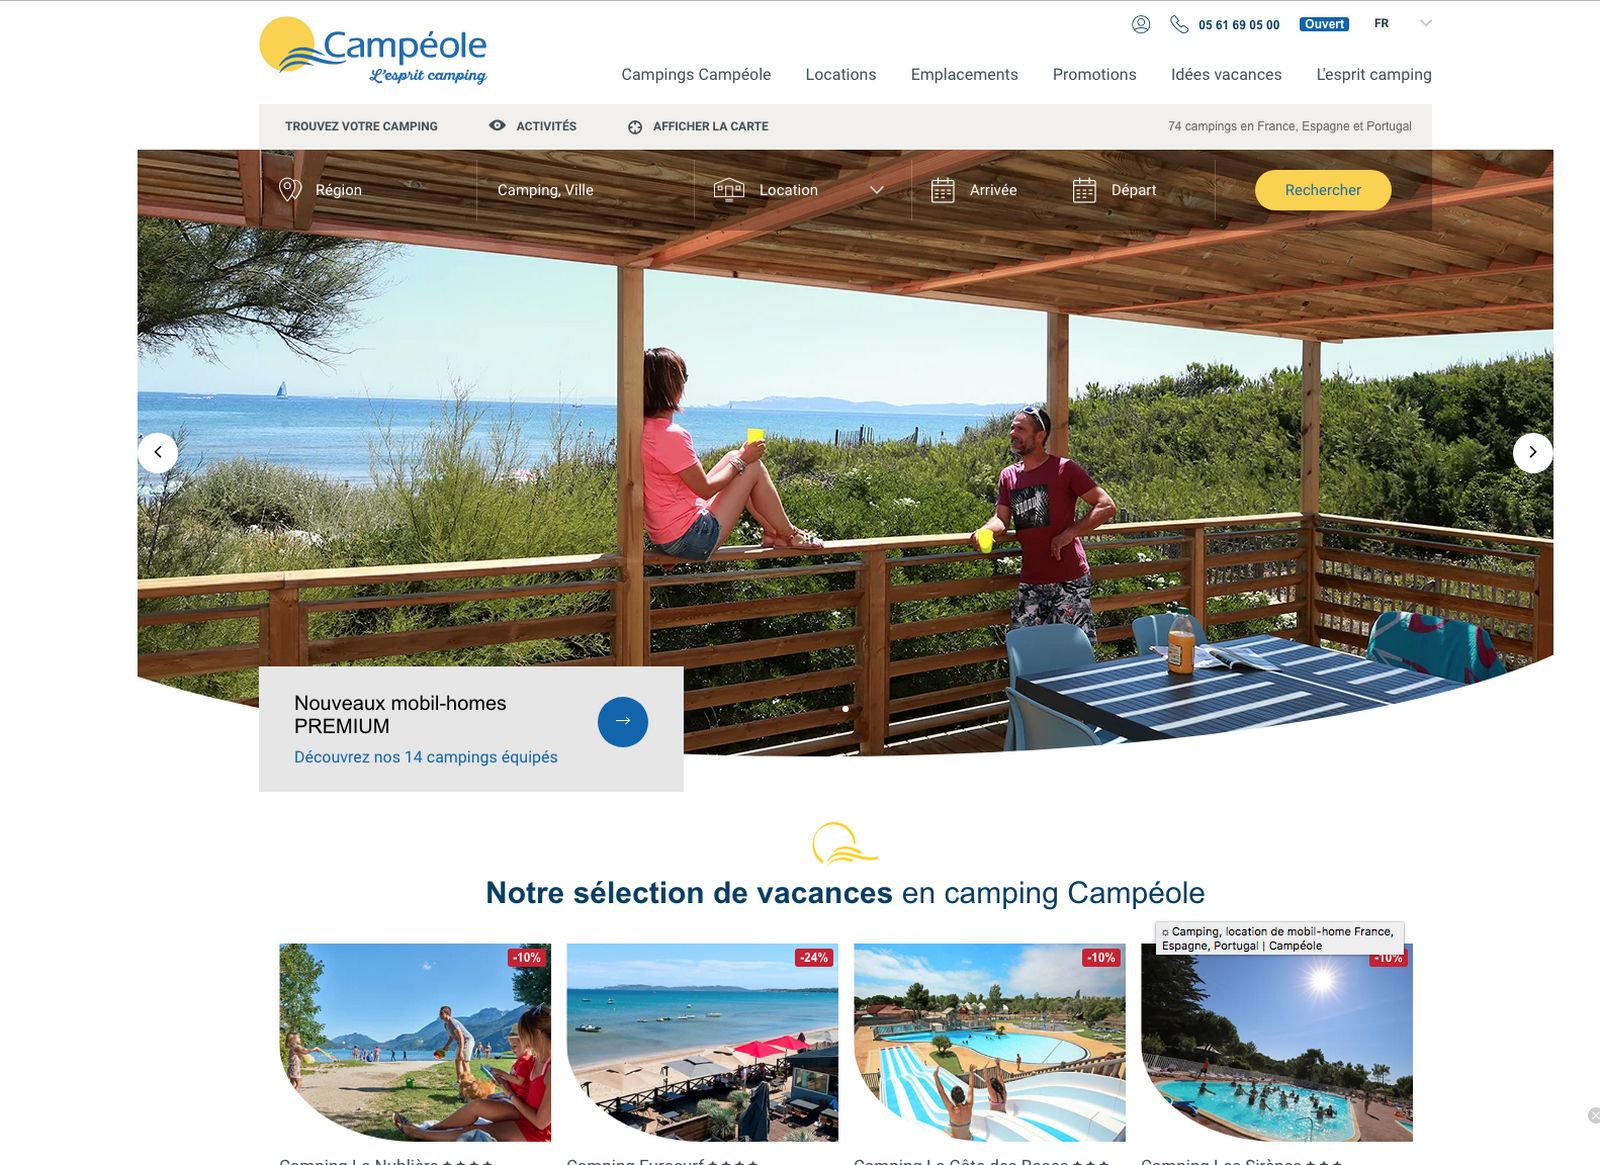 Photo d'illustration d'un couple en bord de mer pour le site internet du camping Eurosurf à Hyères du groupe Campéole